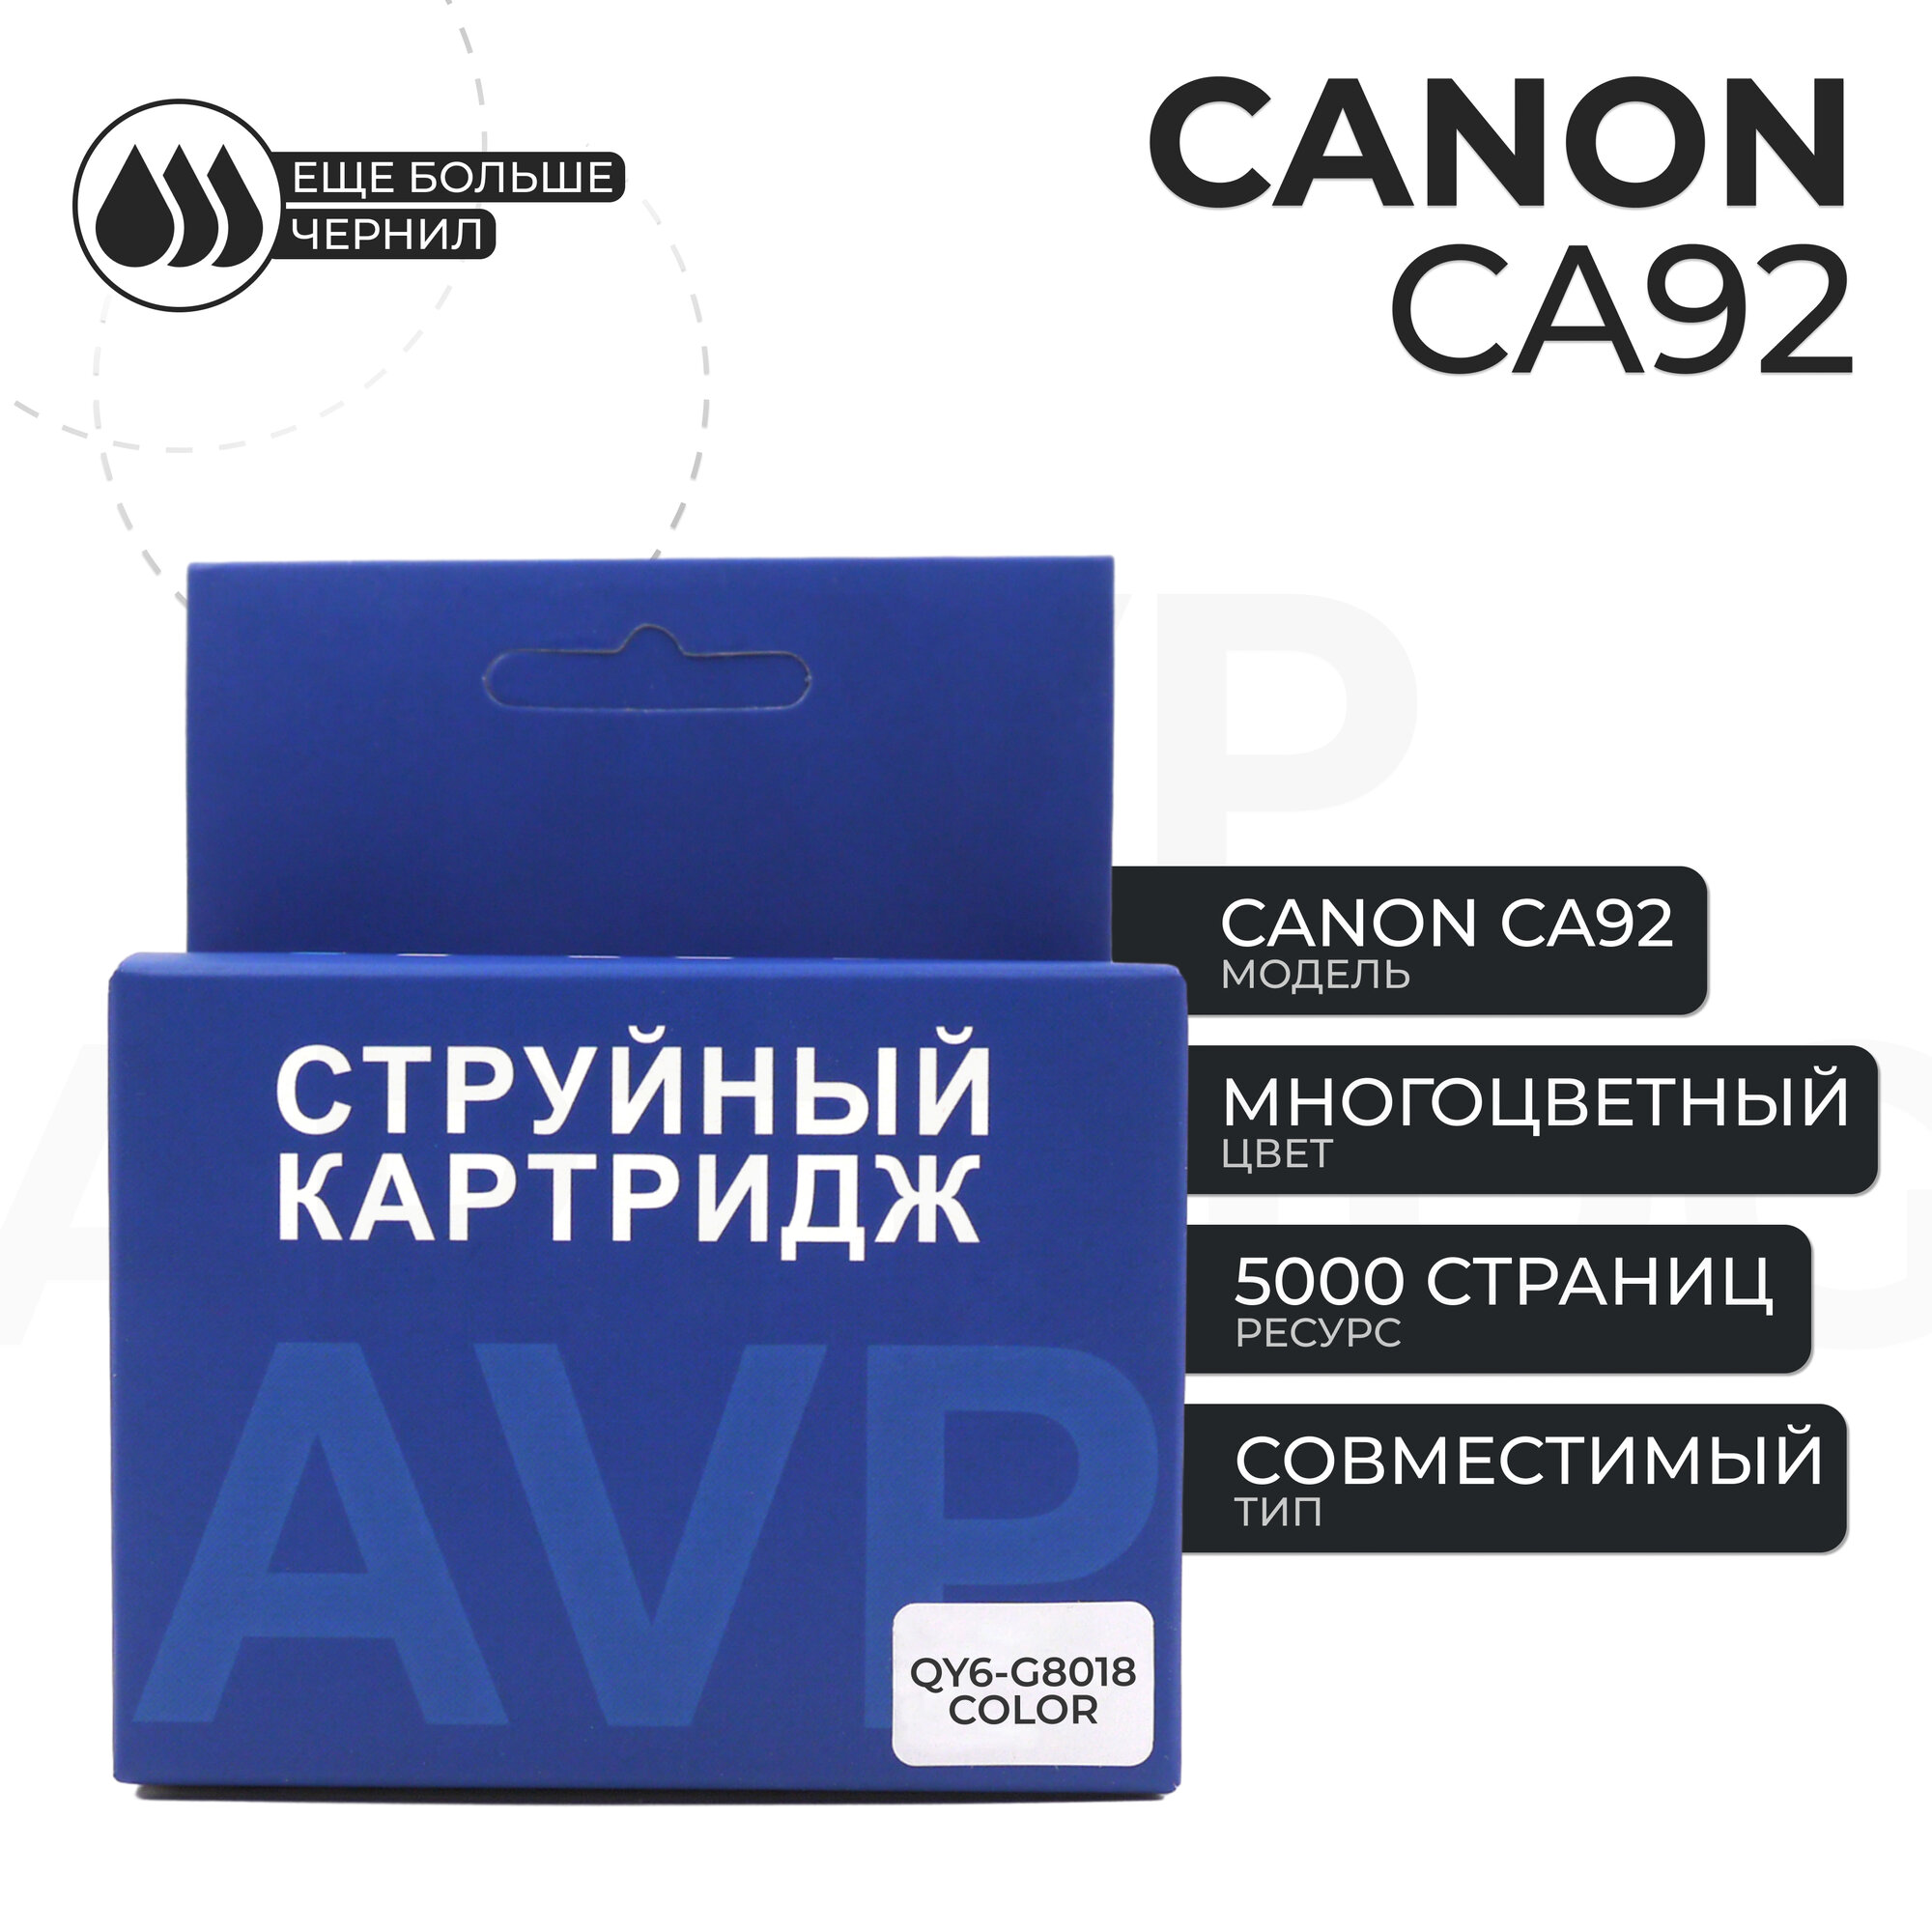 Печатающая головка Canon CA92 цветная (QY6-G8018) AVP